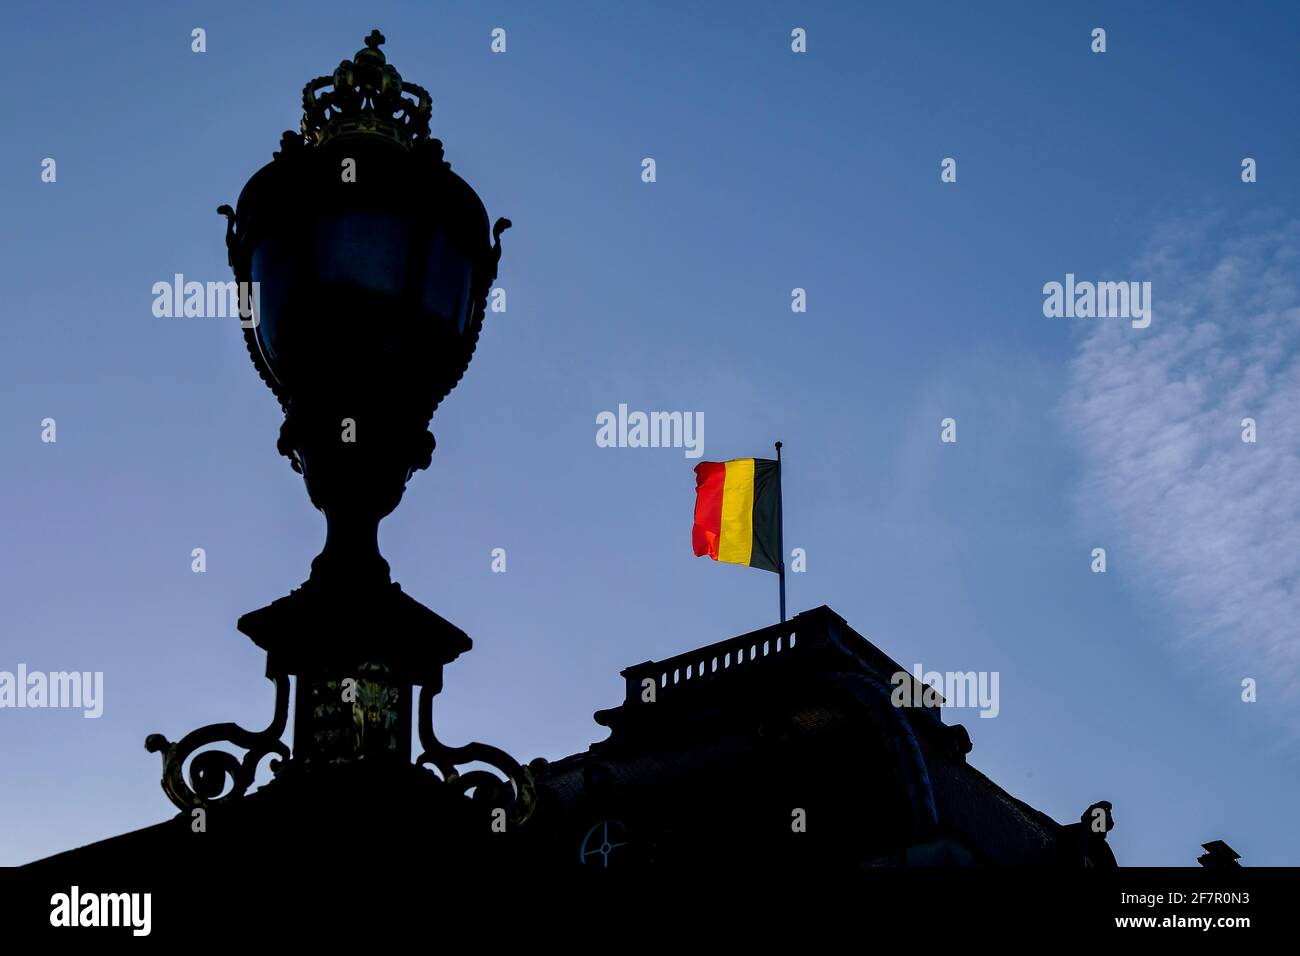 15.12.2019, Bruessel, Belgien - Die belgische Fahne auf dem Dach des koeniglichen Palastes in Bruessel zeigt an, dass die koenigliche Familie anwesend Stock Photo